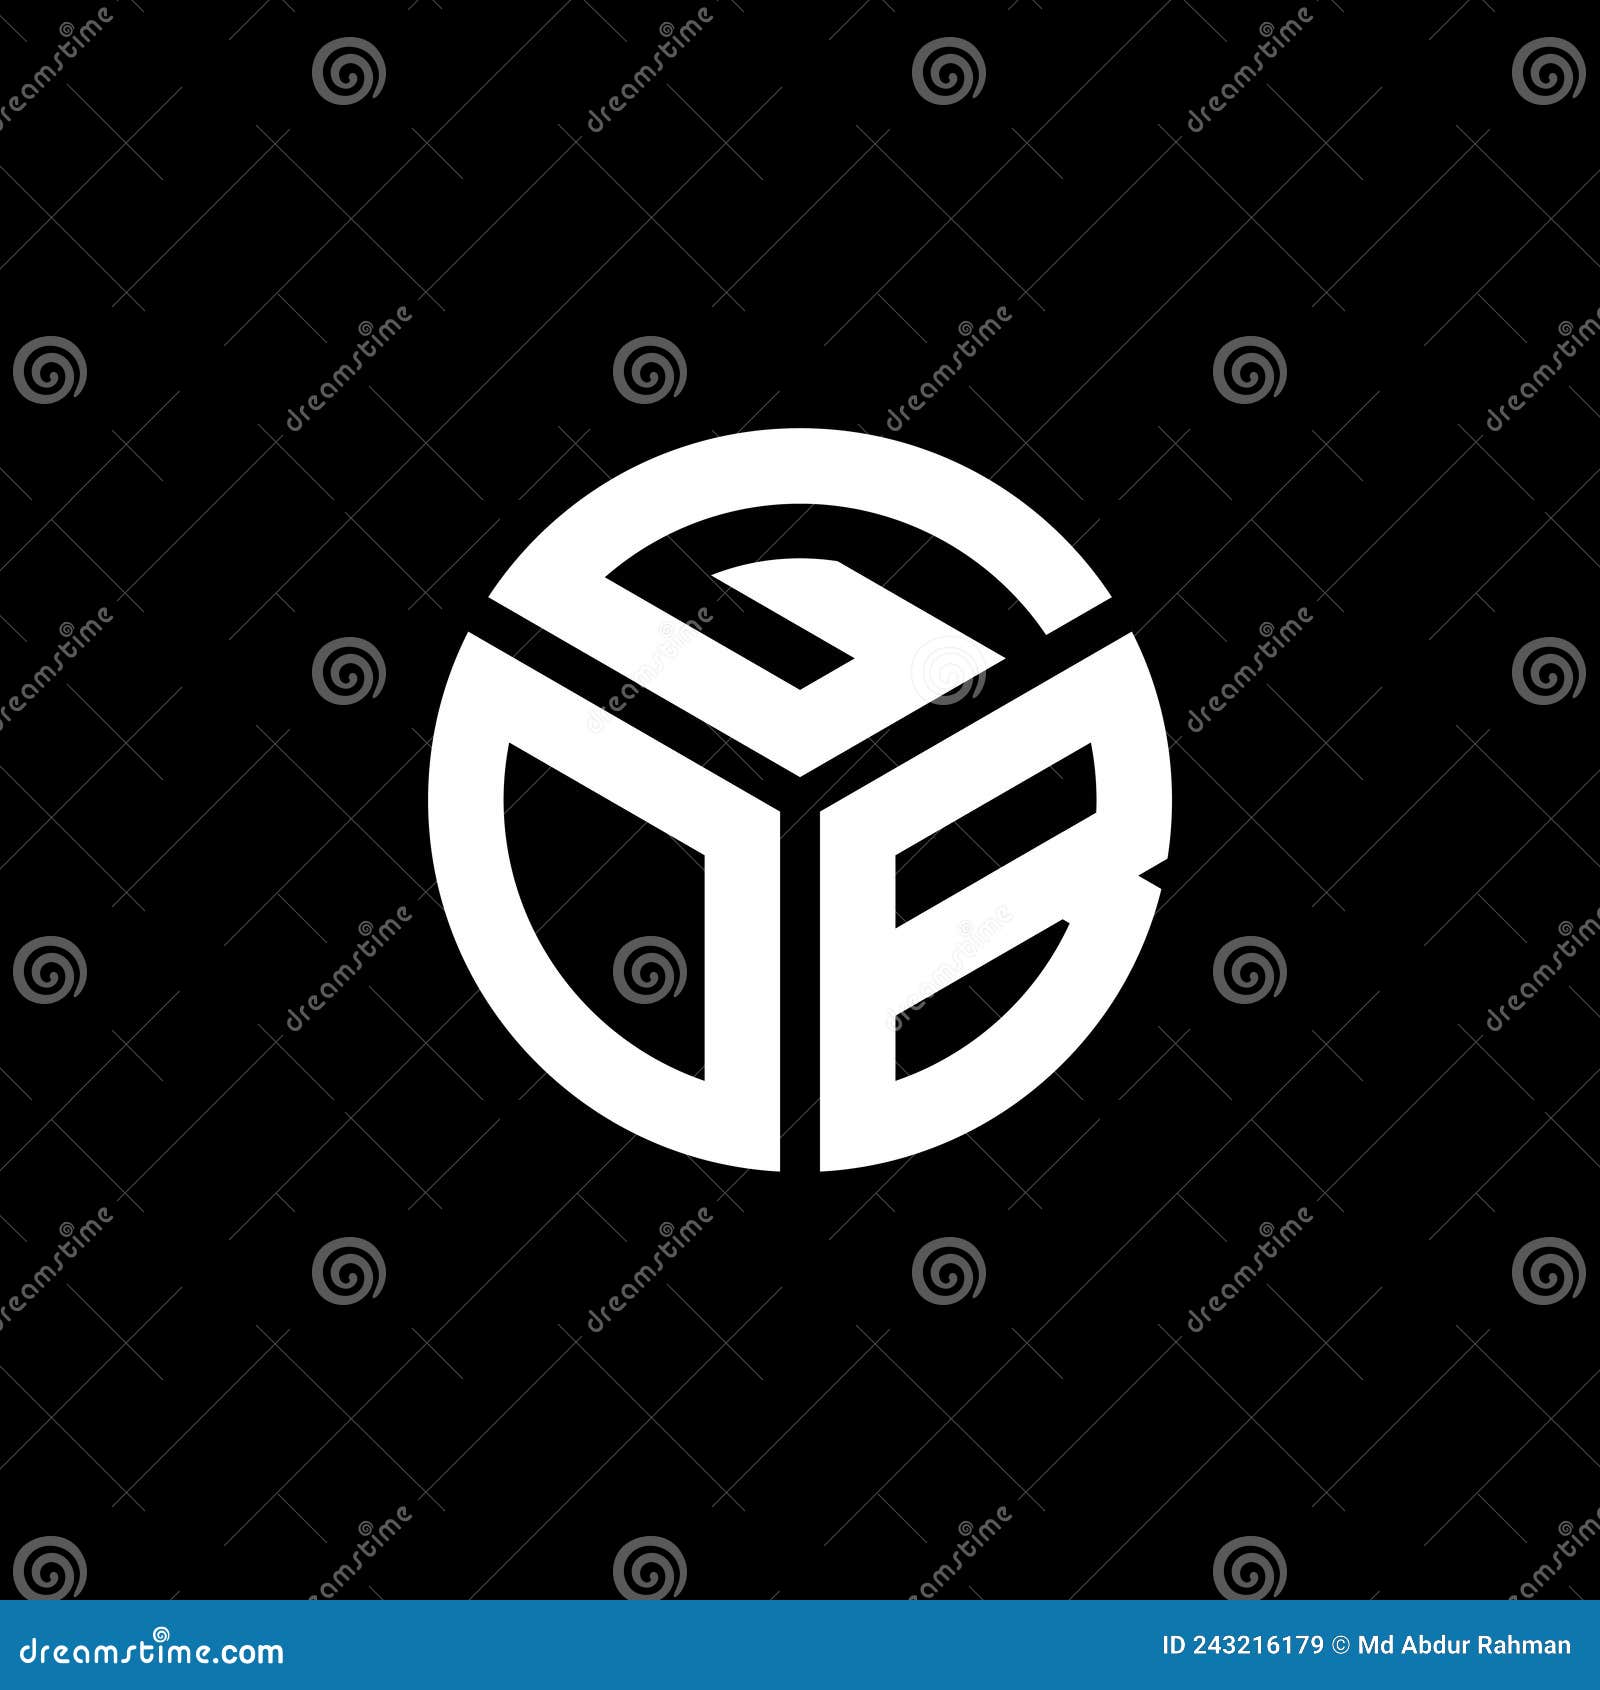 gob letter logo  on black background. gob creative initials letter logo concept. gob letter 